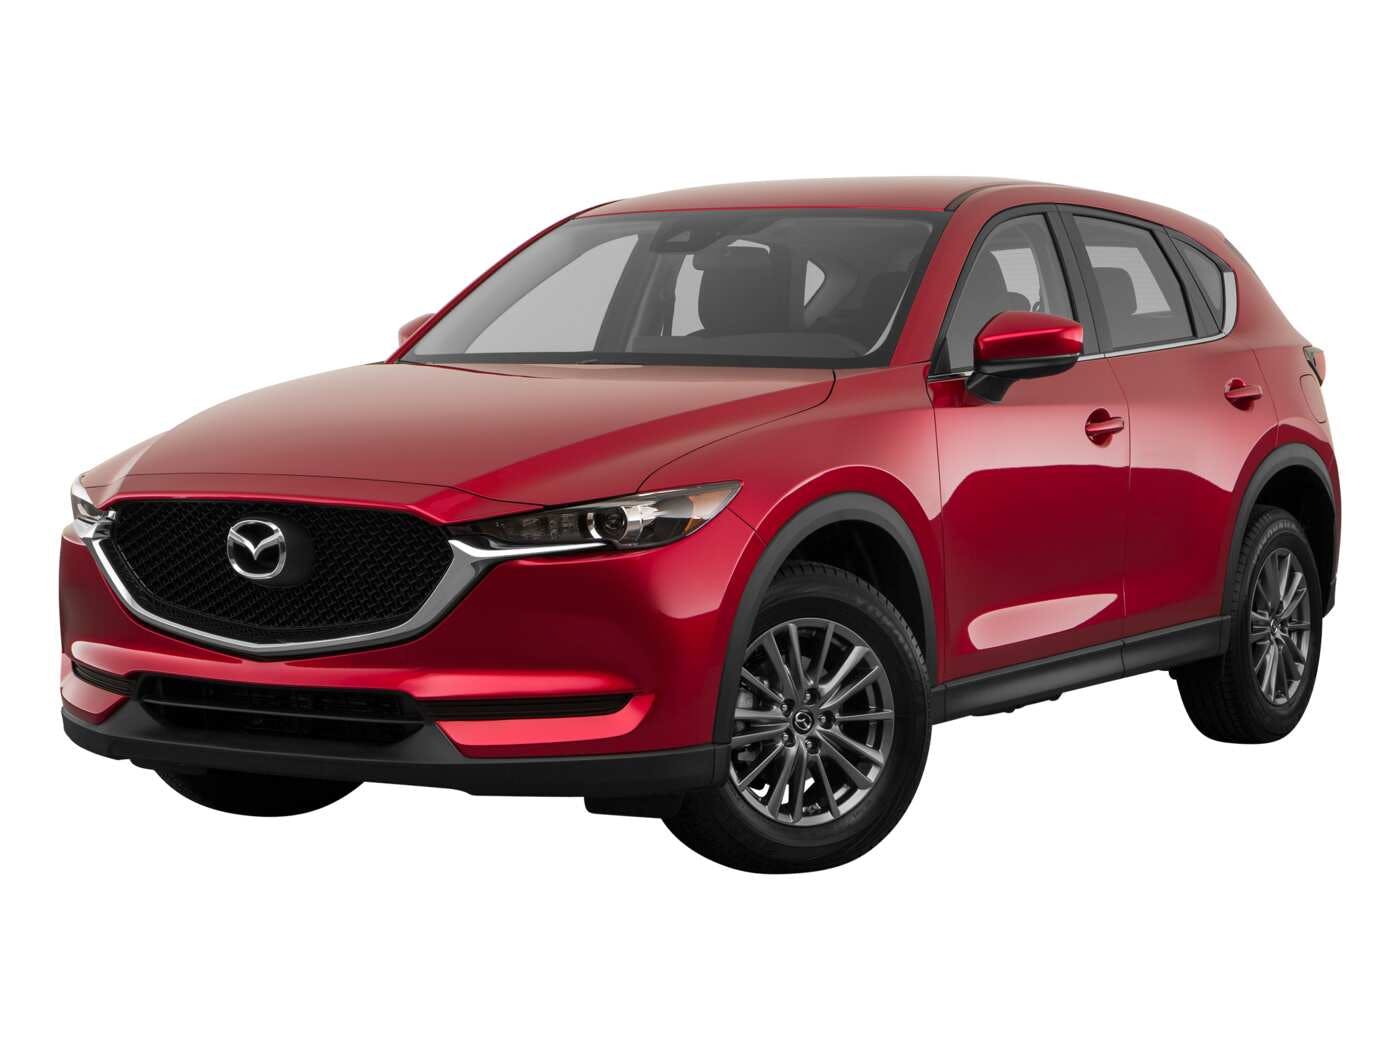 2020 Mazda CX-5 Review  Pricing, Trims & Photos - TrueCar